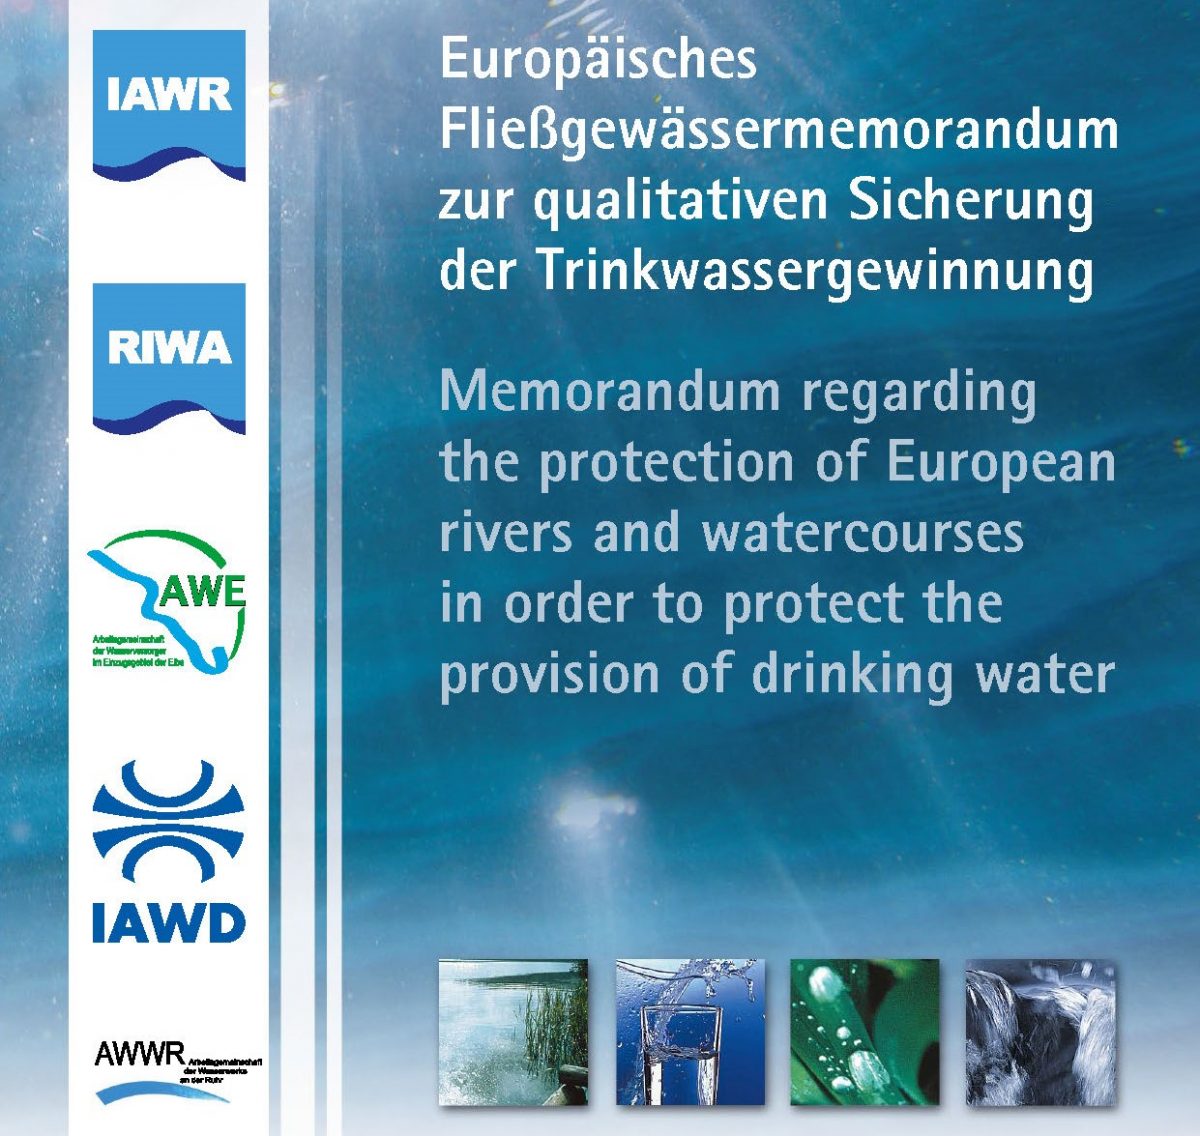 Presseinformation der Koalition des Europäischen Fließgewässer-Memorandums